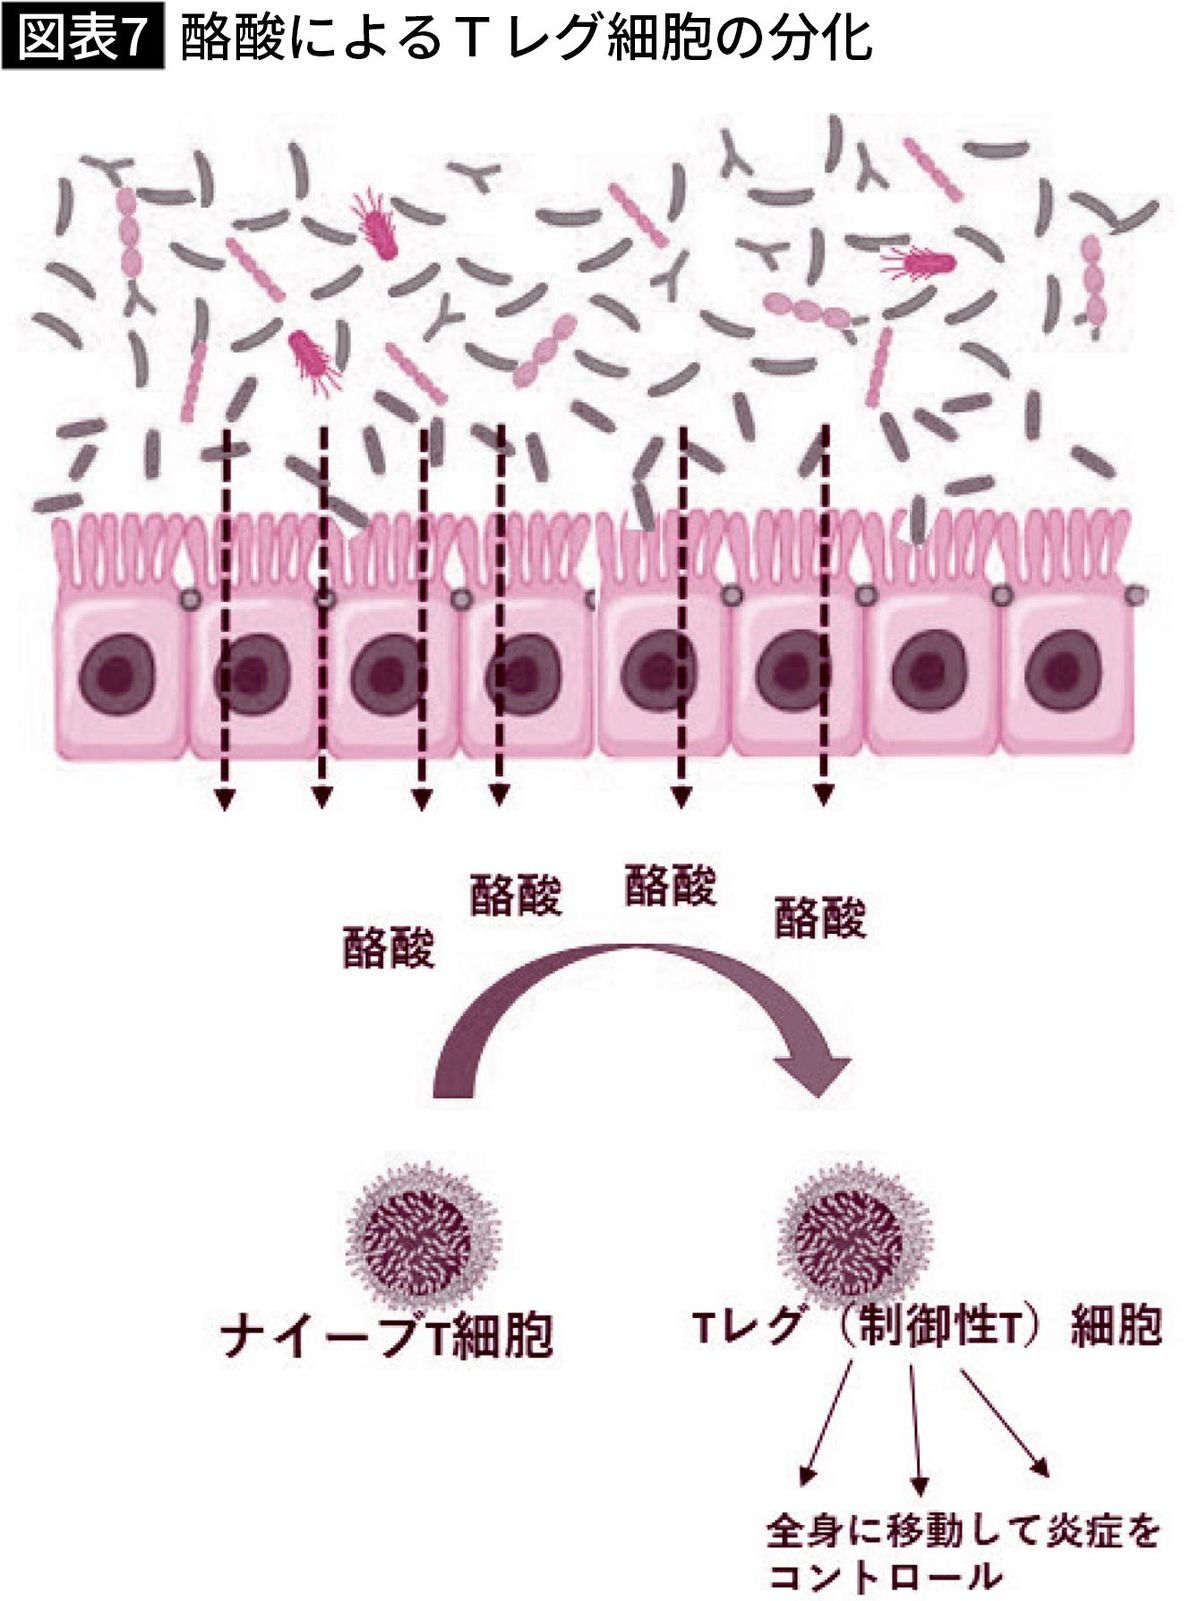 【図表】酪酸によるTレグ細胞の分化